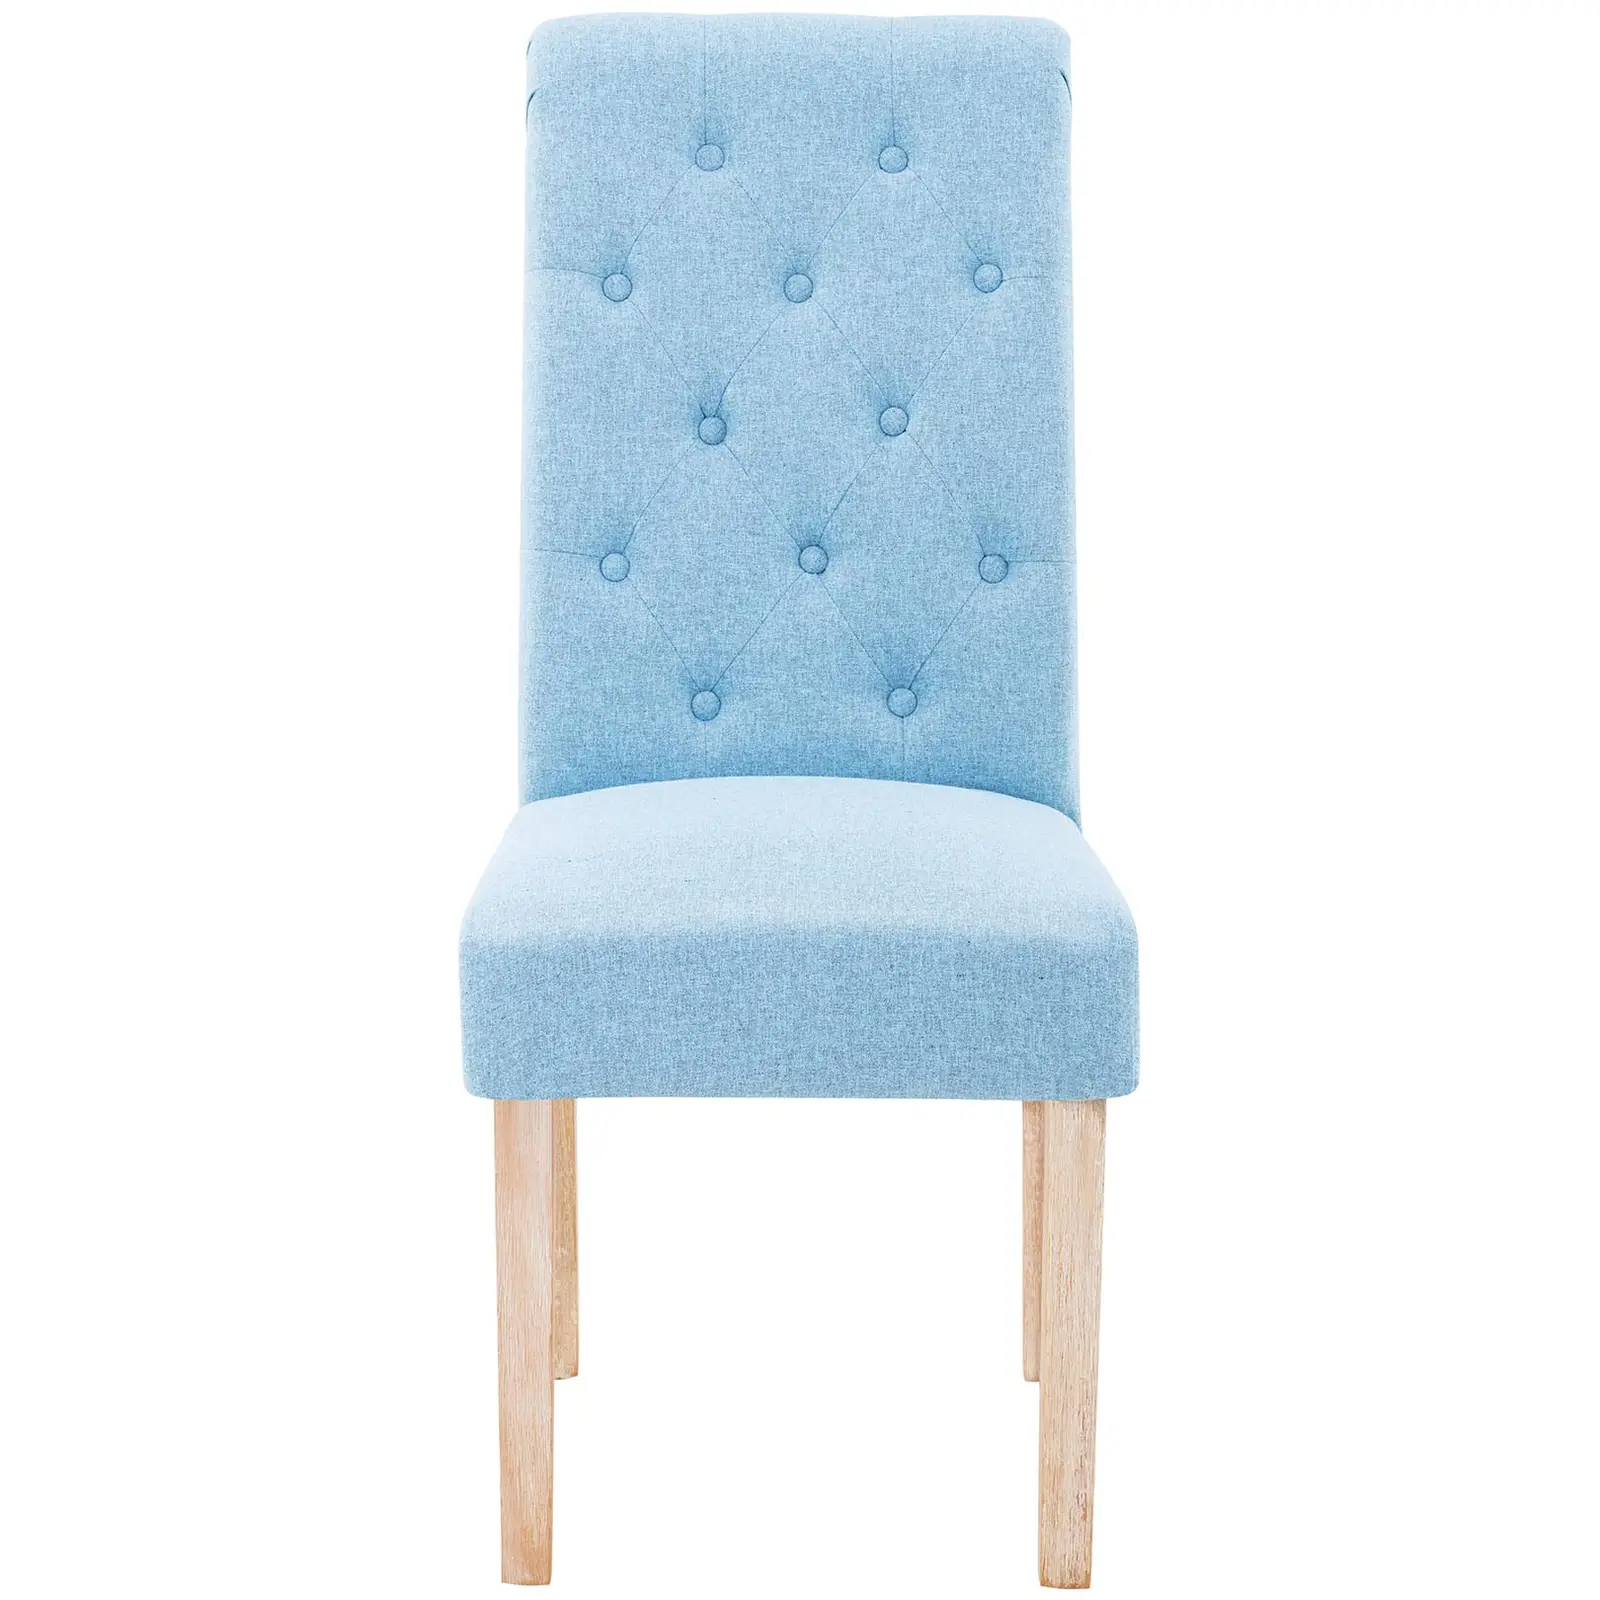 Čalúnená stolička - sada 2 ks - do 180 kg - plocha na sedenie 46 x 42 cm - nebeská modrá